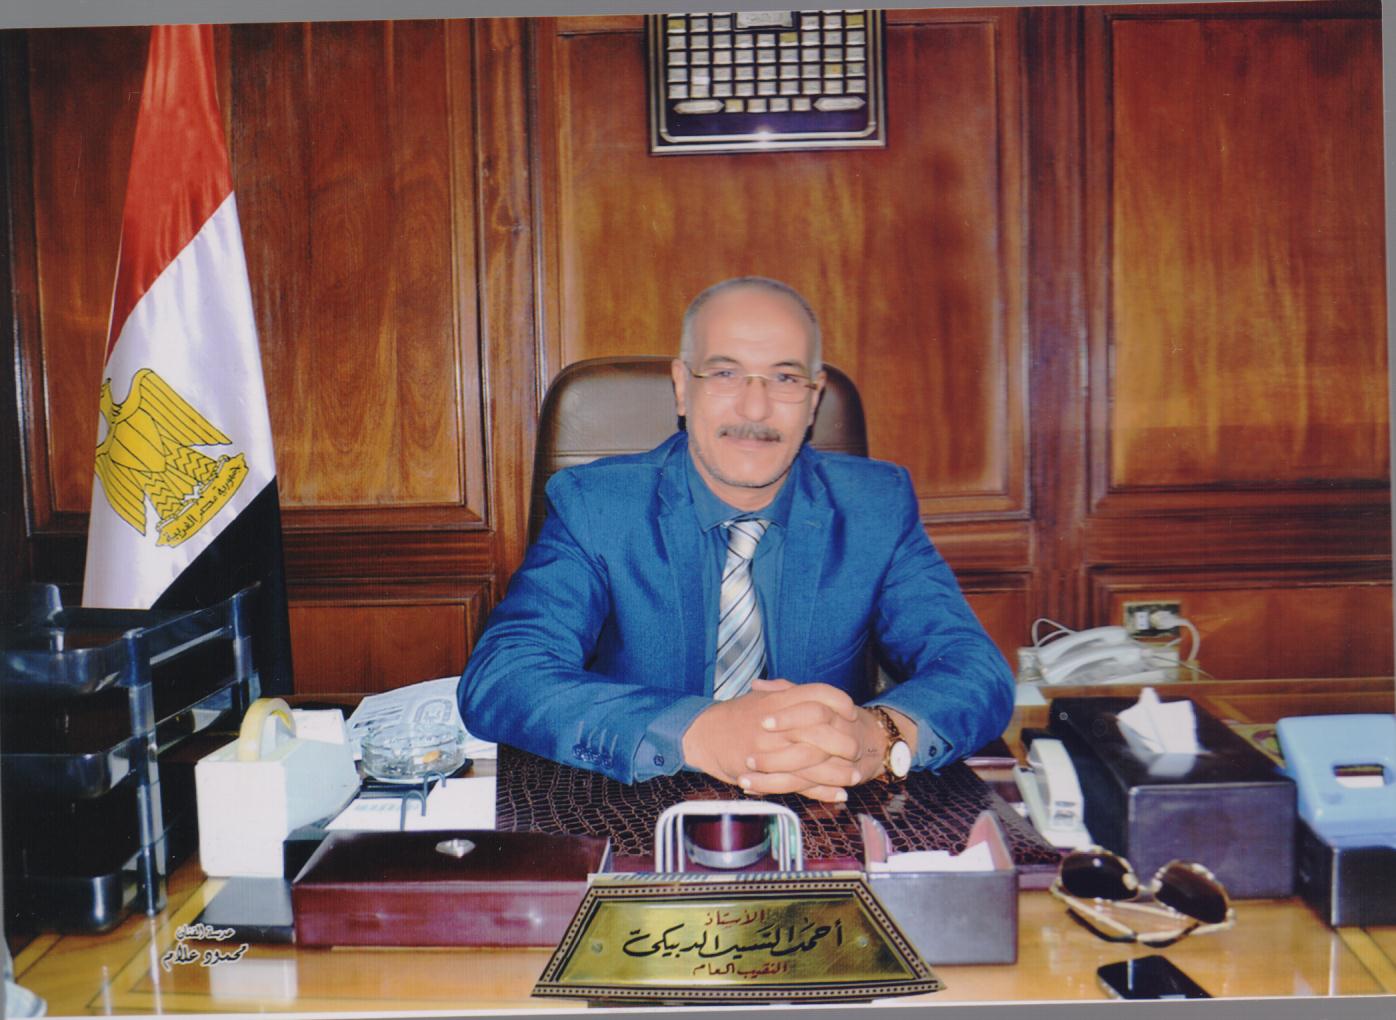 أحمد السيد الدبيكي نقيب العلوم الصحية